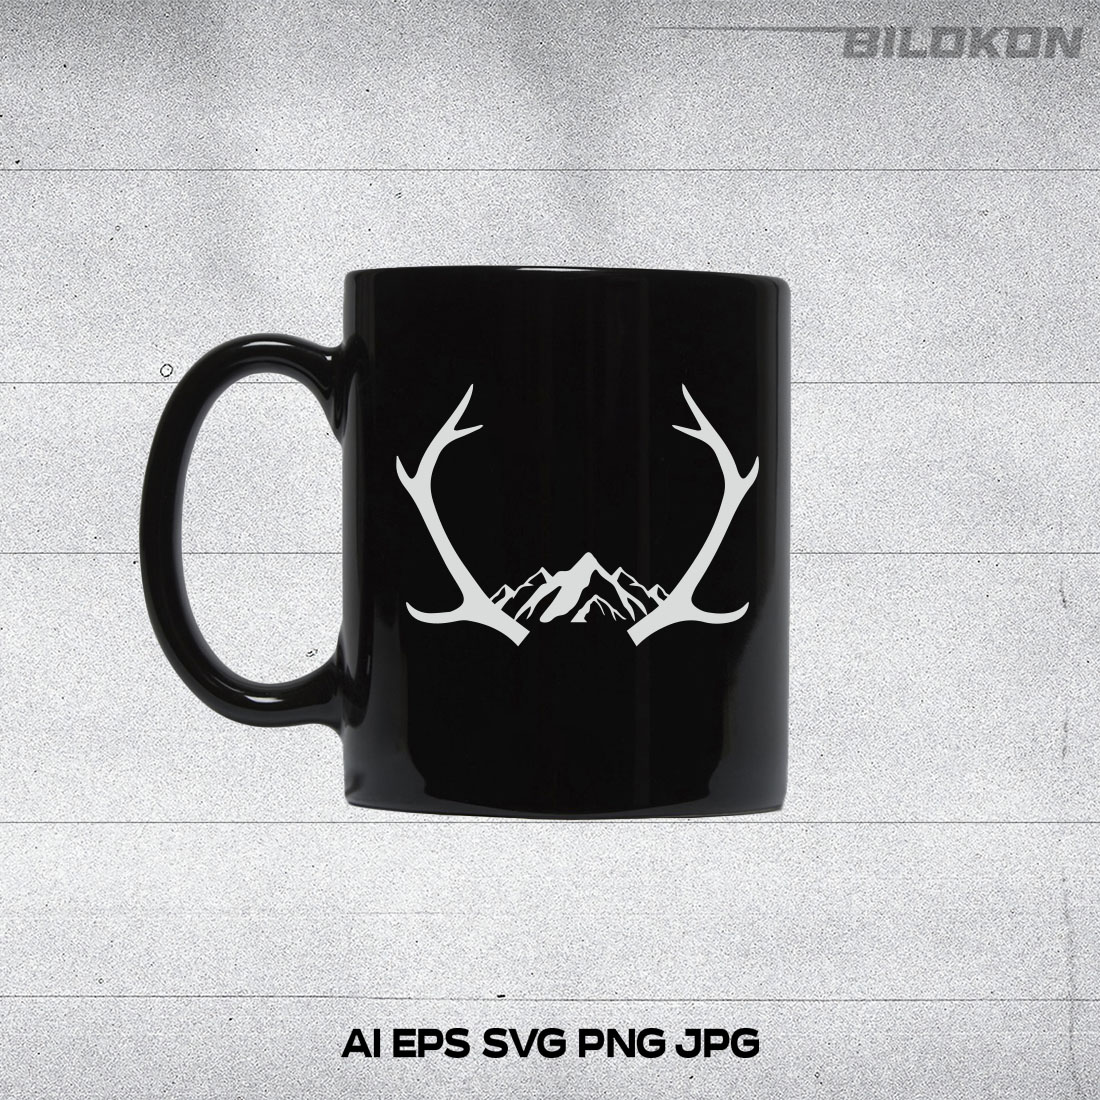 Black coffee mug with white deer antlers on it.